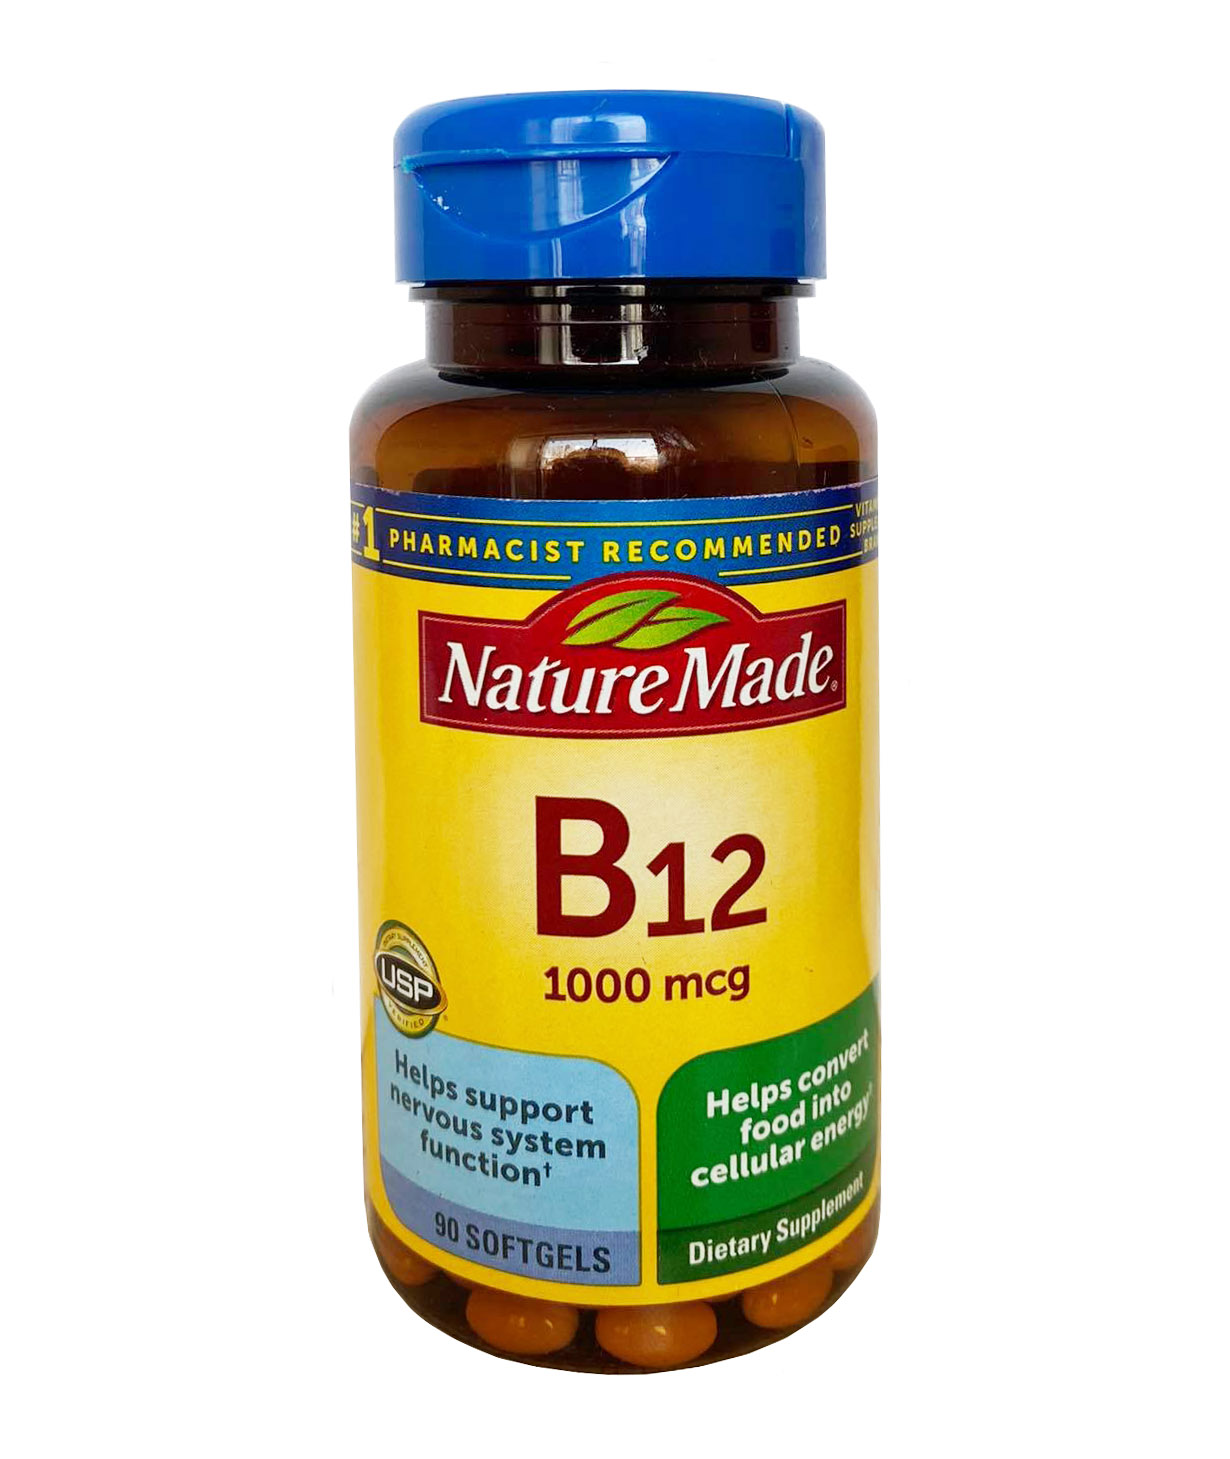 Nature Made B12 vitamin có đáp ứng đầy đủ nhu cầu Vitamin B12 của cơ thể không?
